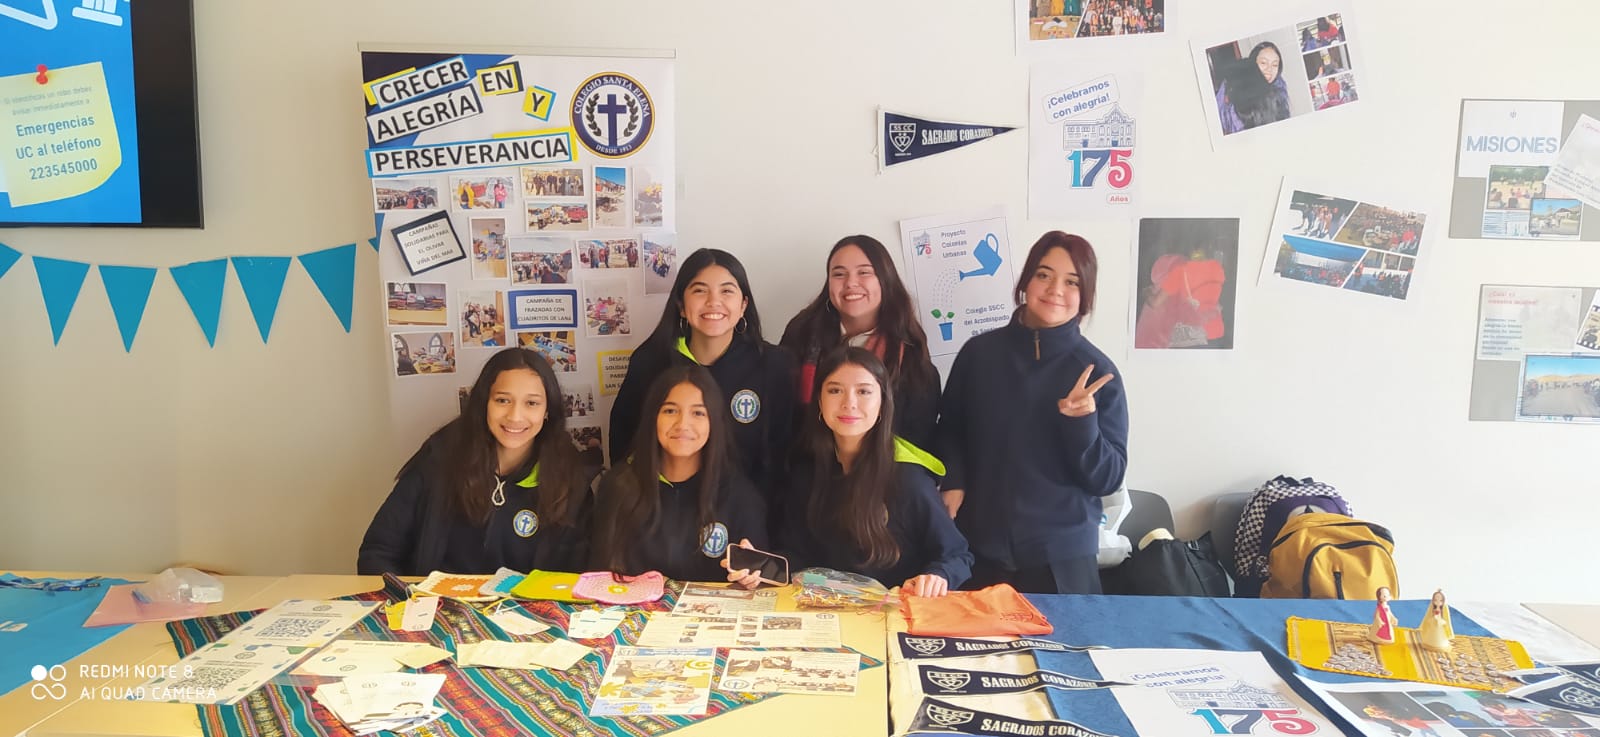 Estudiantes del Colegio Santa Elena Destacan en el Encuentro Somos Iglesia